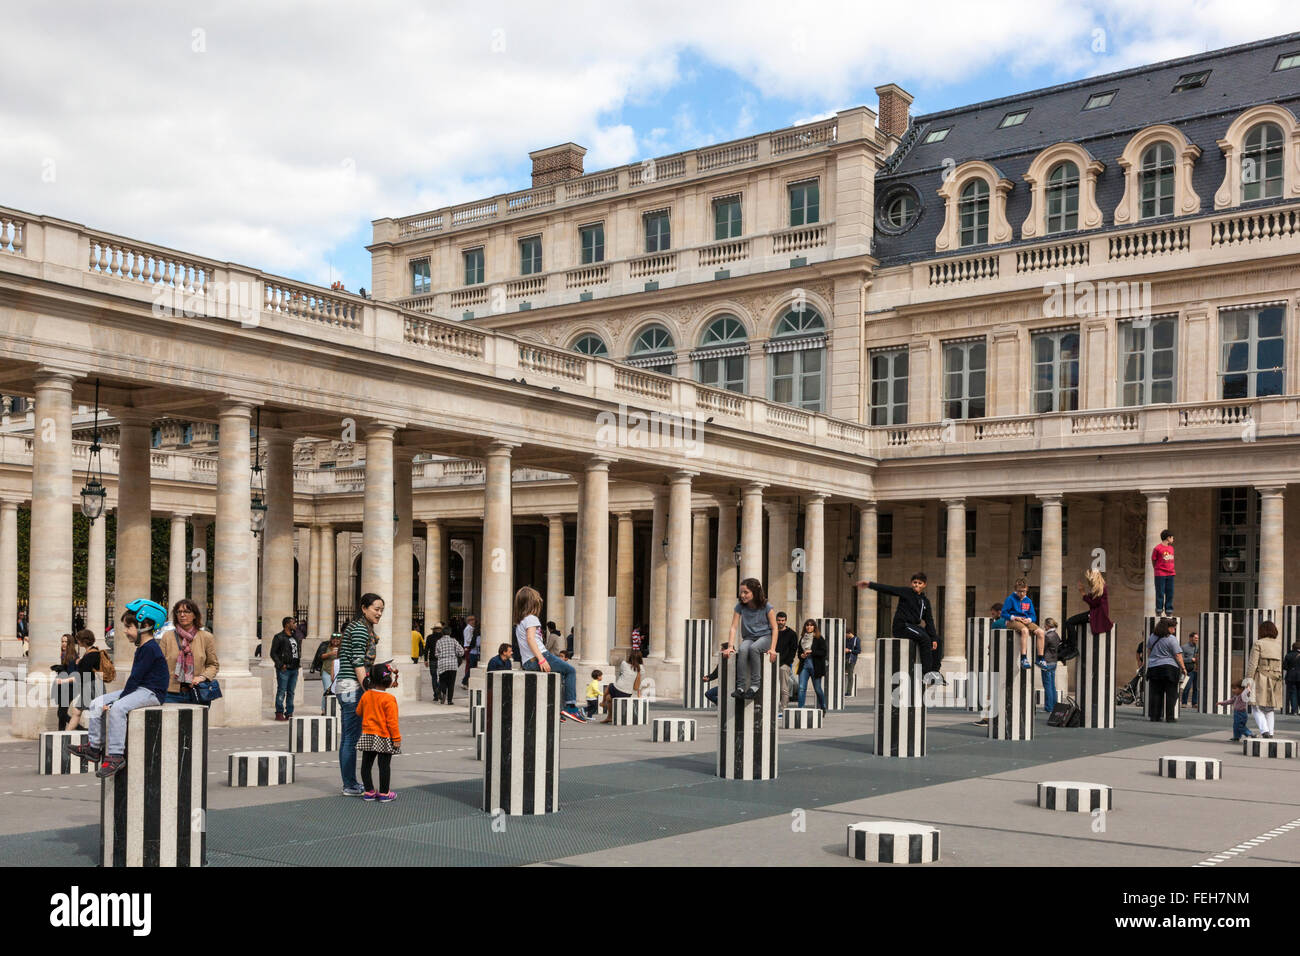 Le Palais Royal, Paris, France Stock Photo